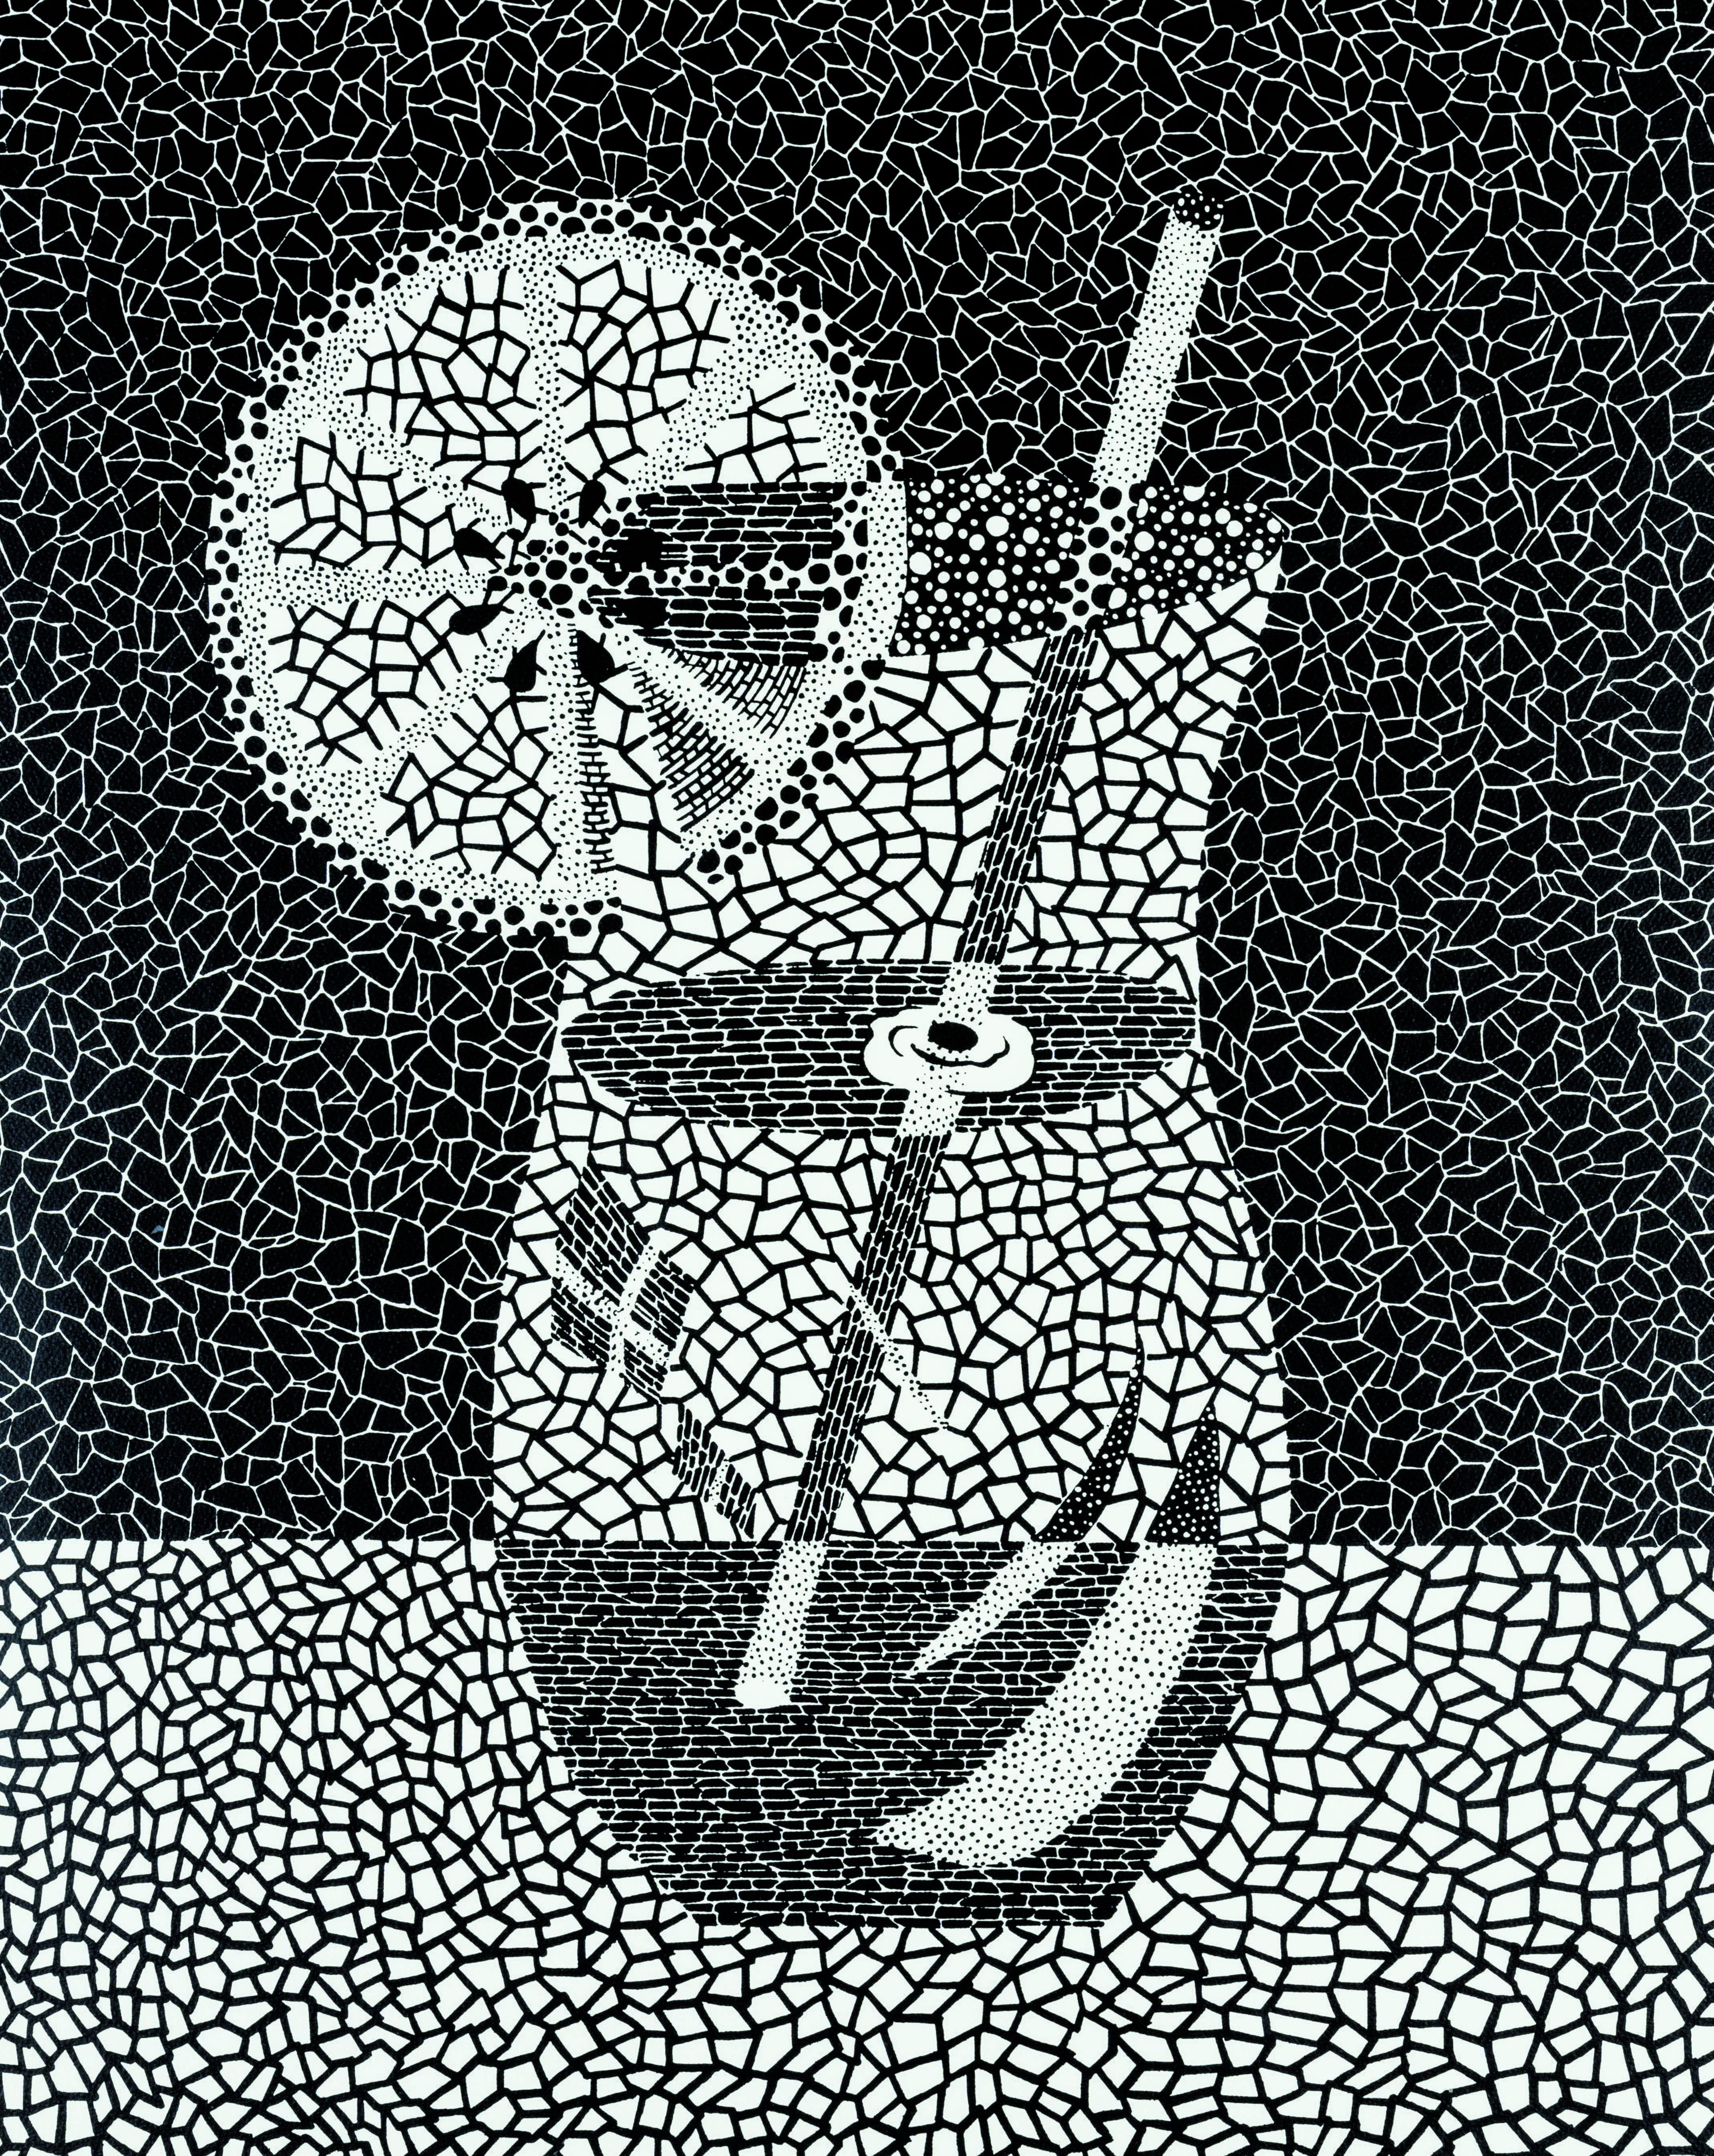 Yayoi Kusama 
Zitronenkürbis (1988). Ausgabe 18/50
Siebdruck
Vom Künstler mit Bleistift signiert, auf Japanisch betitelt, datiert und nummeriert.
[3 Bildschirme, 2 Farben, 3 Durchläufe]
84,6 x 68 cm (Bild) 
97,5 x 79,3 cm  (Blatt)
Auflage: 50 + 5